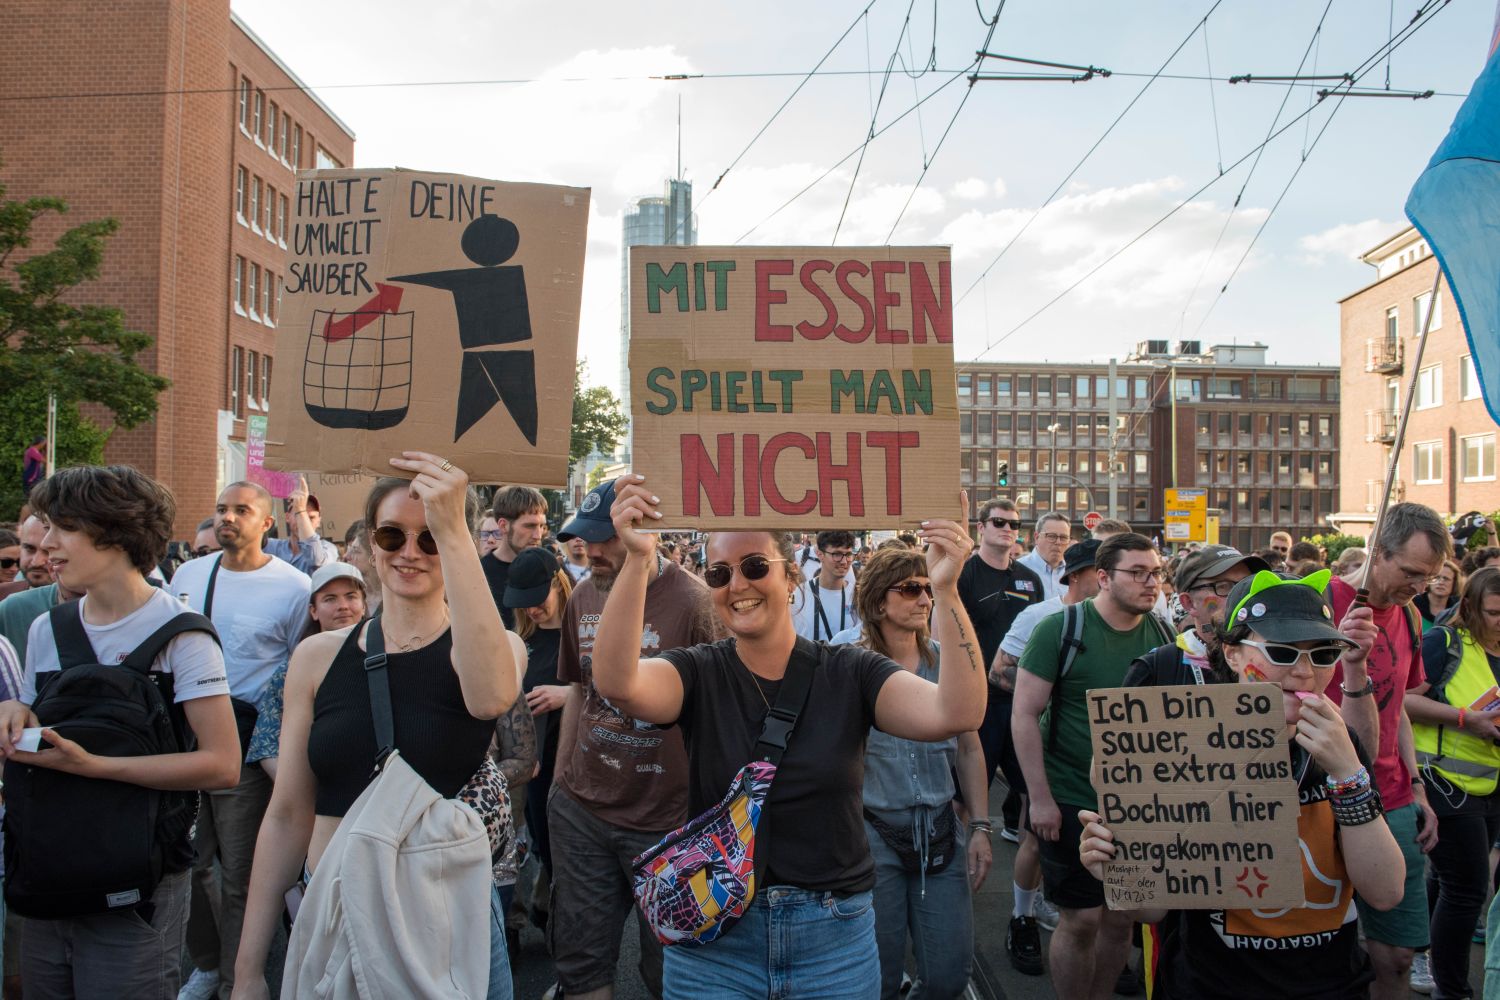 Laut - Bunt - Entschlossen! Protest gegen den Bundesparteitag der AfD in Essen <i>Bild Christian Schneider/R-mediabase</i> <br><a href=/confor2/?bld=82896&pst=82663&aid=615&dc=1951&i1=Christian%20Schneider/R-mediabase><strong>Downloadanfrage</strong></a>  